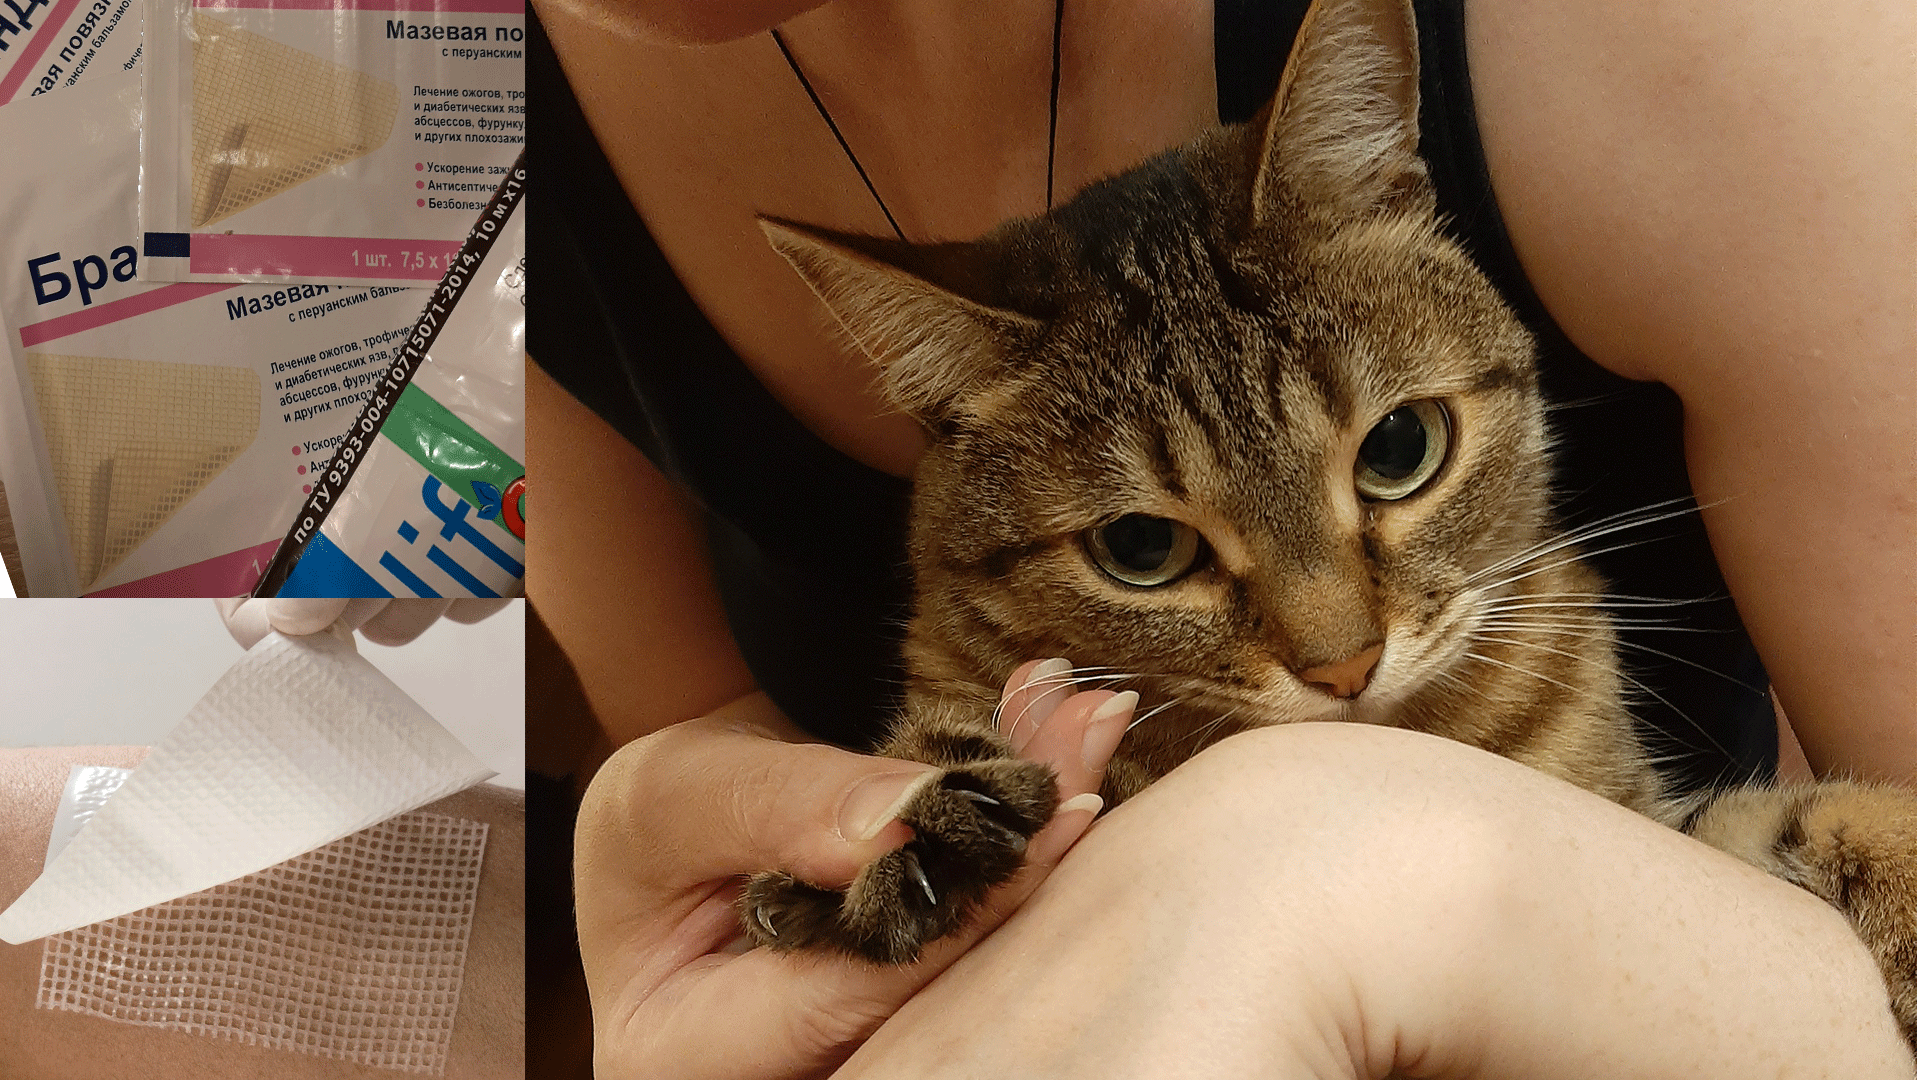 Повязка для заживления ран от кошачих зарапин, кошка на руках у человека с выпущенными когтями